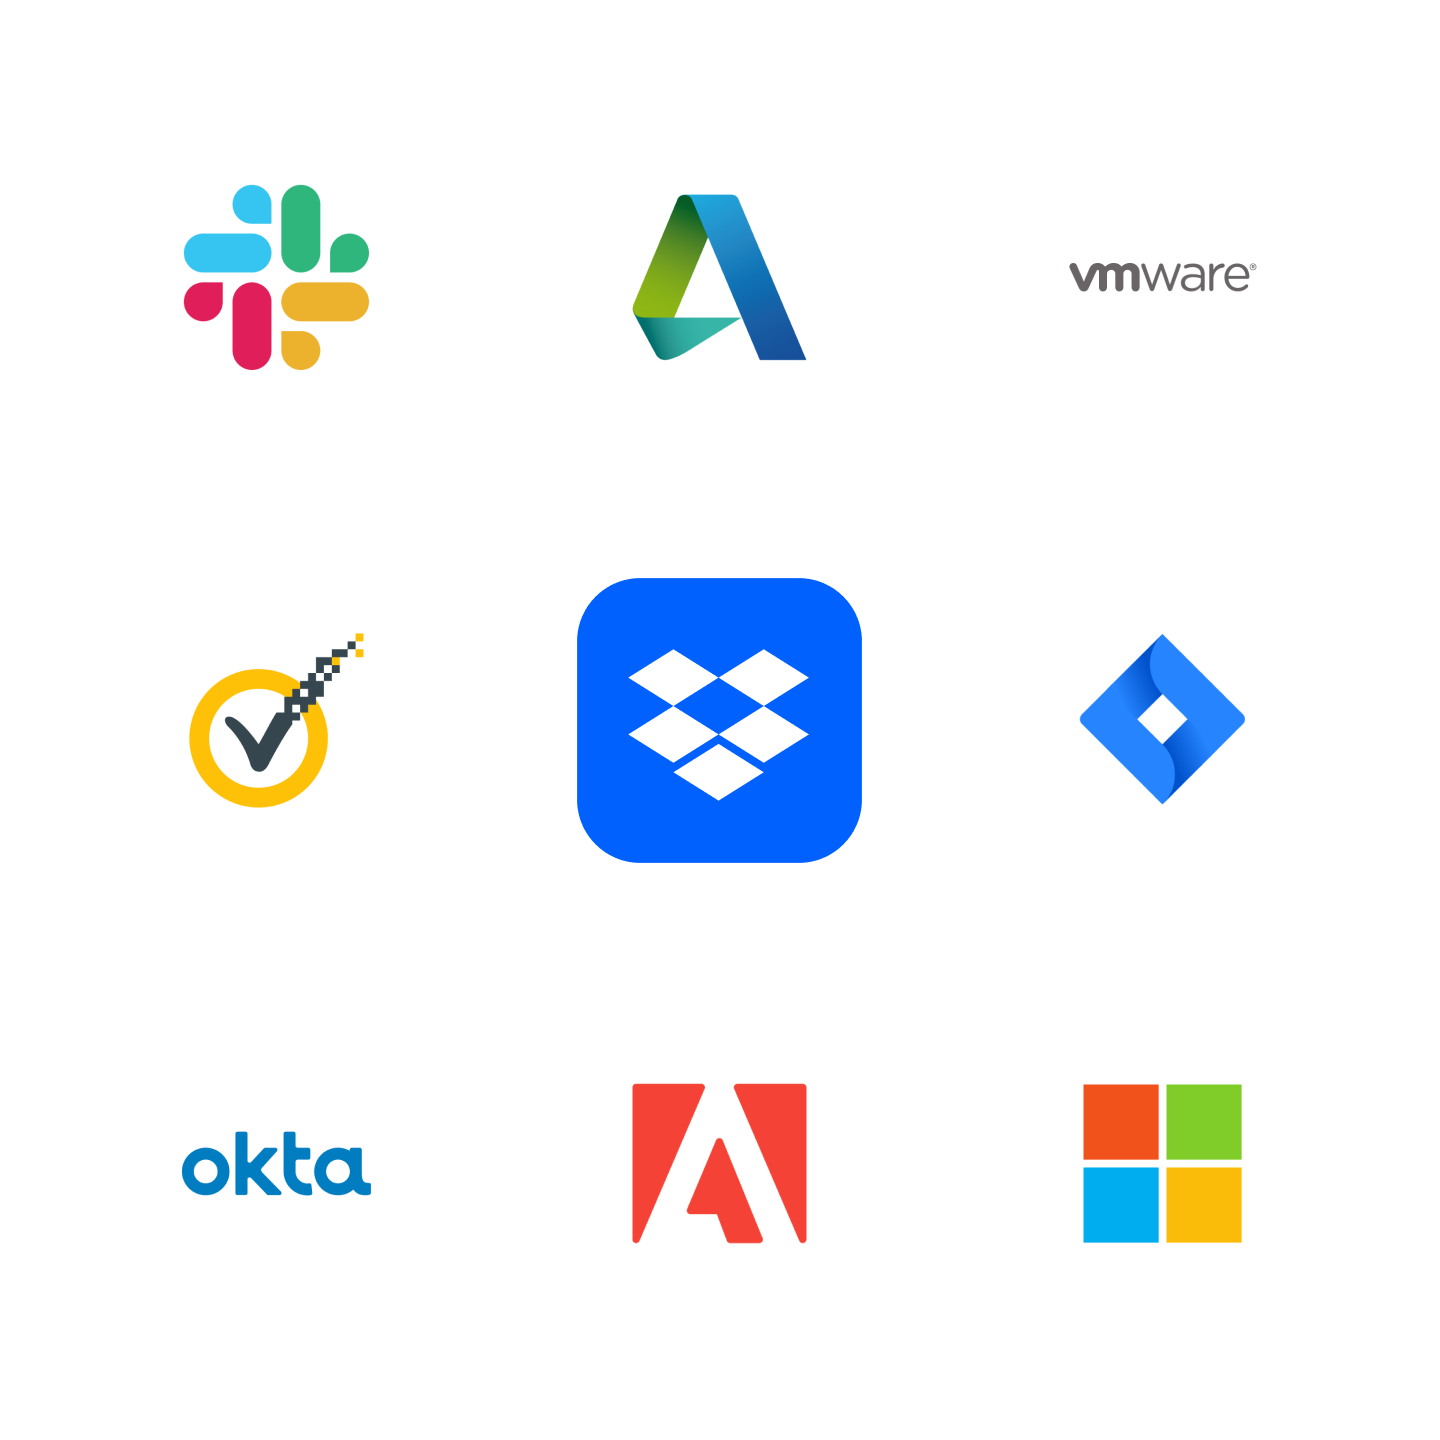  Icone di aziende con cui si integra Dropbox